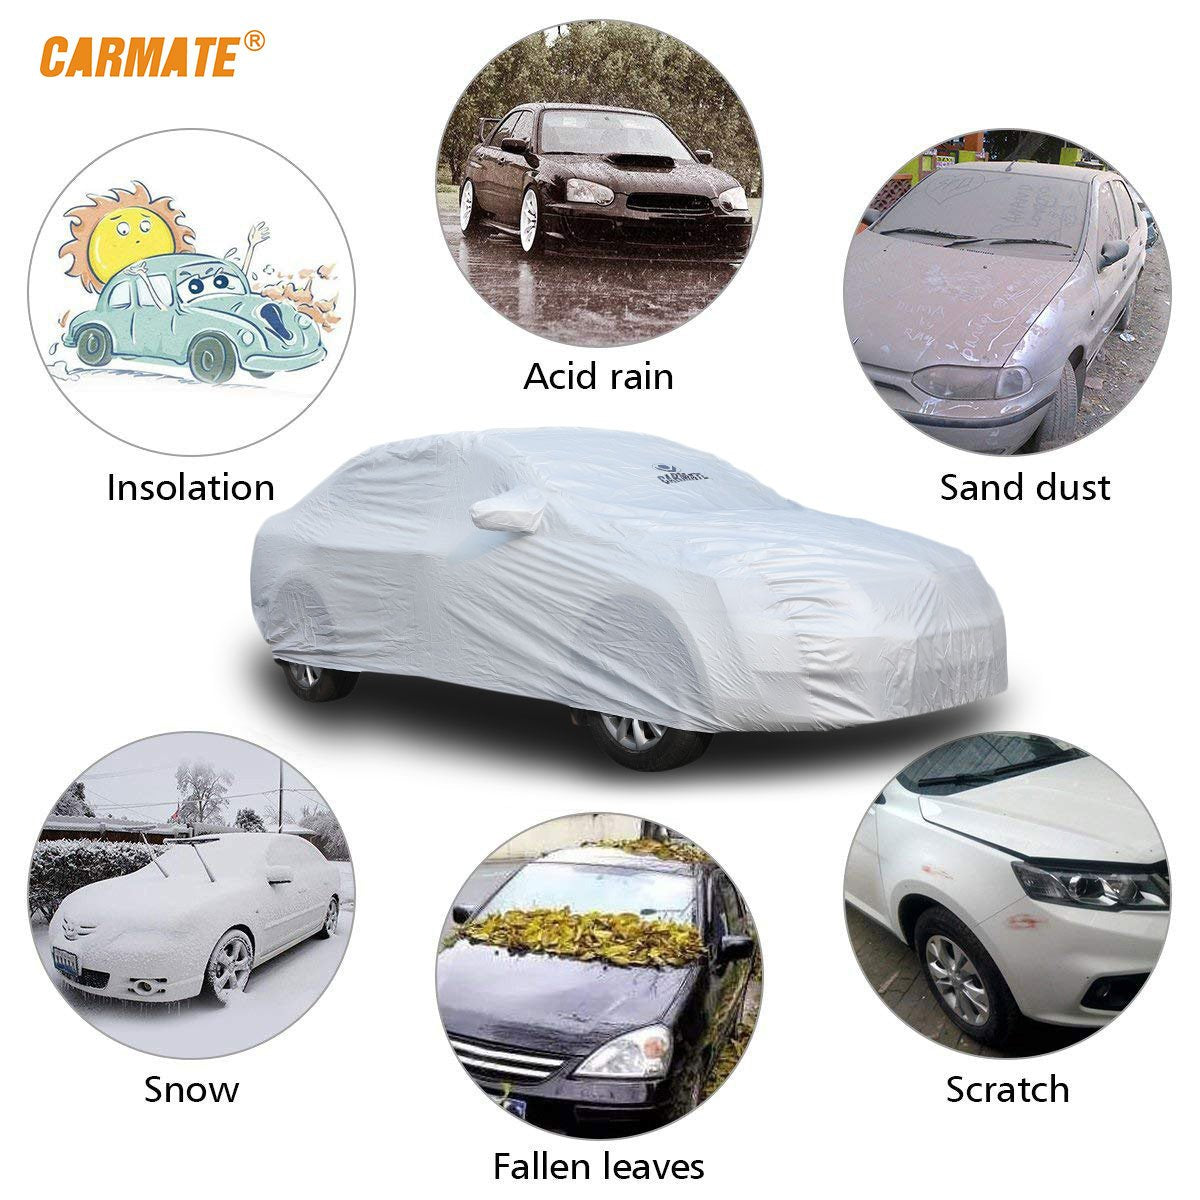 Carmate Premium Car Body Cover Silver Matty (Silver) for  Fiat - Punto - CARMATE®